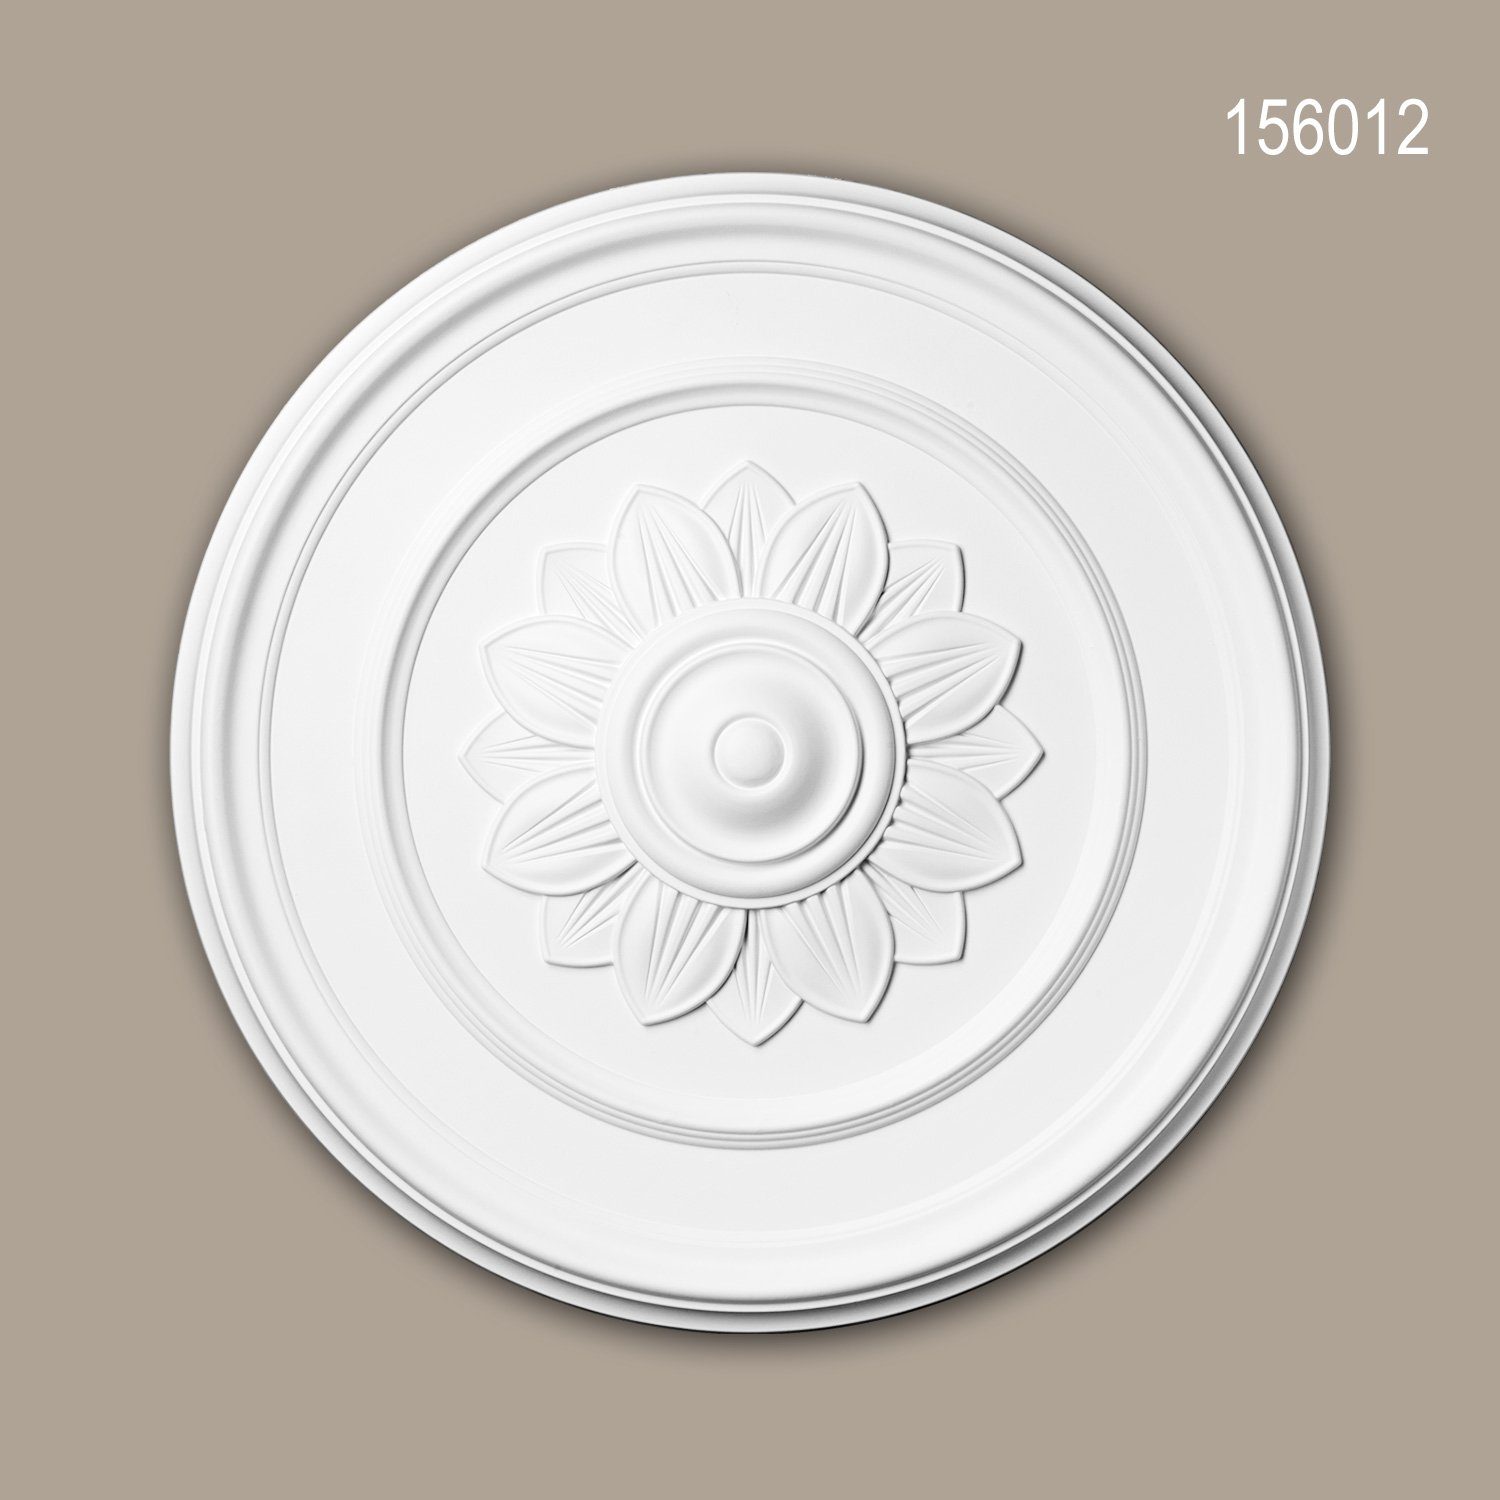 Profhome Decken-Rosette 156012 (Rosette, 1 St., Deckenrosette, Medallion, Stuckrosette, Deckenelement, Zierelement, Durchmesser 53,3 cm), weiß, vorgrundiert, Stil: Jugendstil